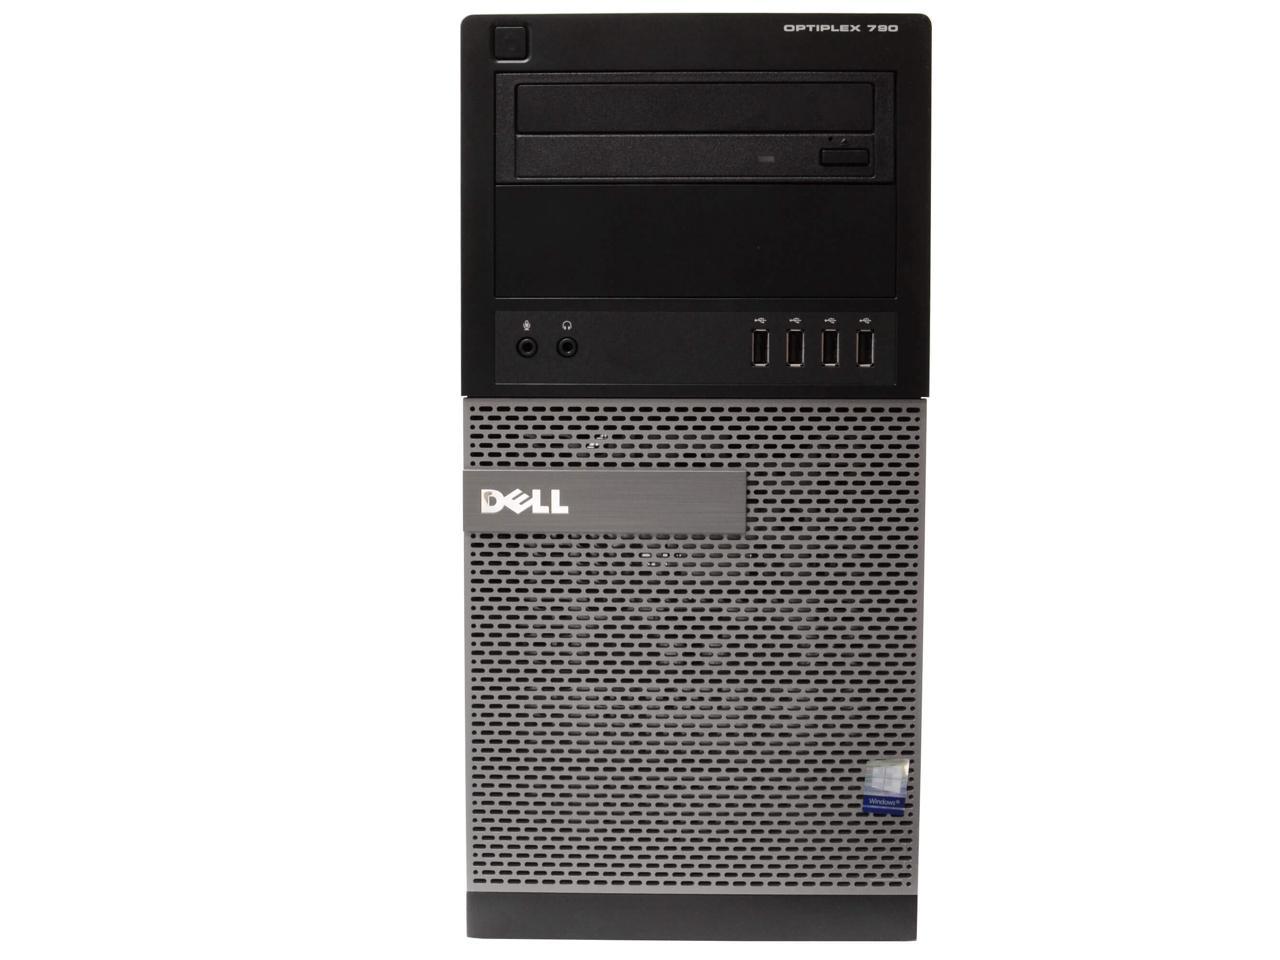 Dell OptiPlex 790 Tower Computer PC, 3.40 GHz Intel i7 Quad Core Gen 2, 8GB DDR3 RAM, 240GB Solid State Drive Hard Drive, Windows 10 Professional 64bit